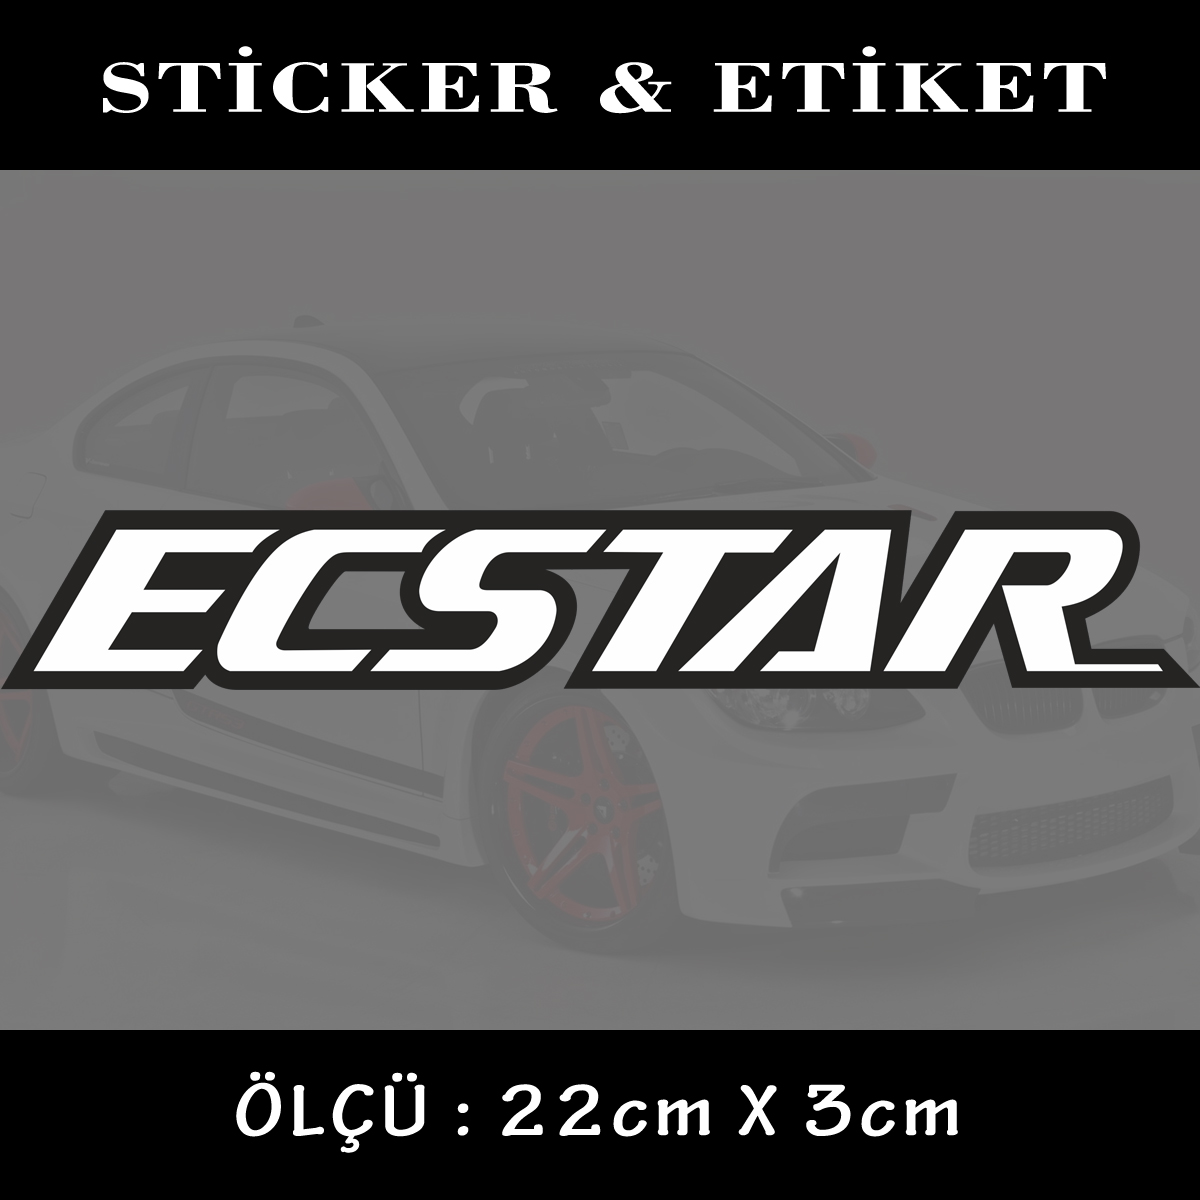 ecsstar - Star sticker yazı